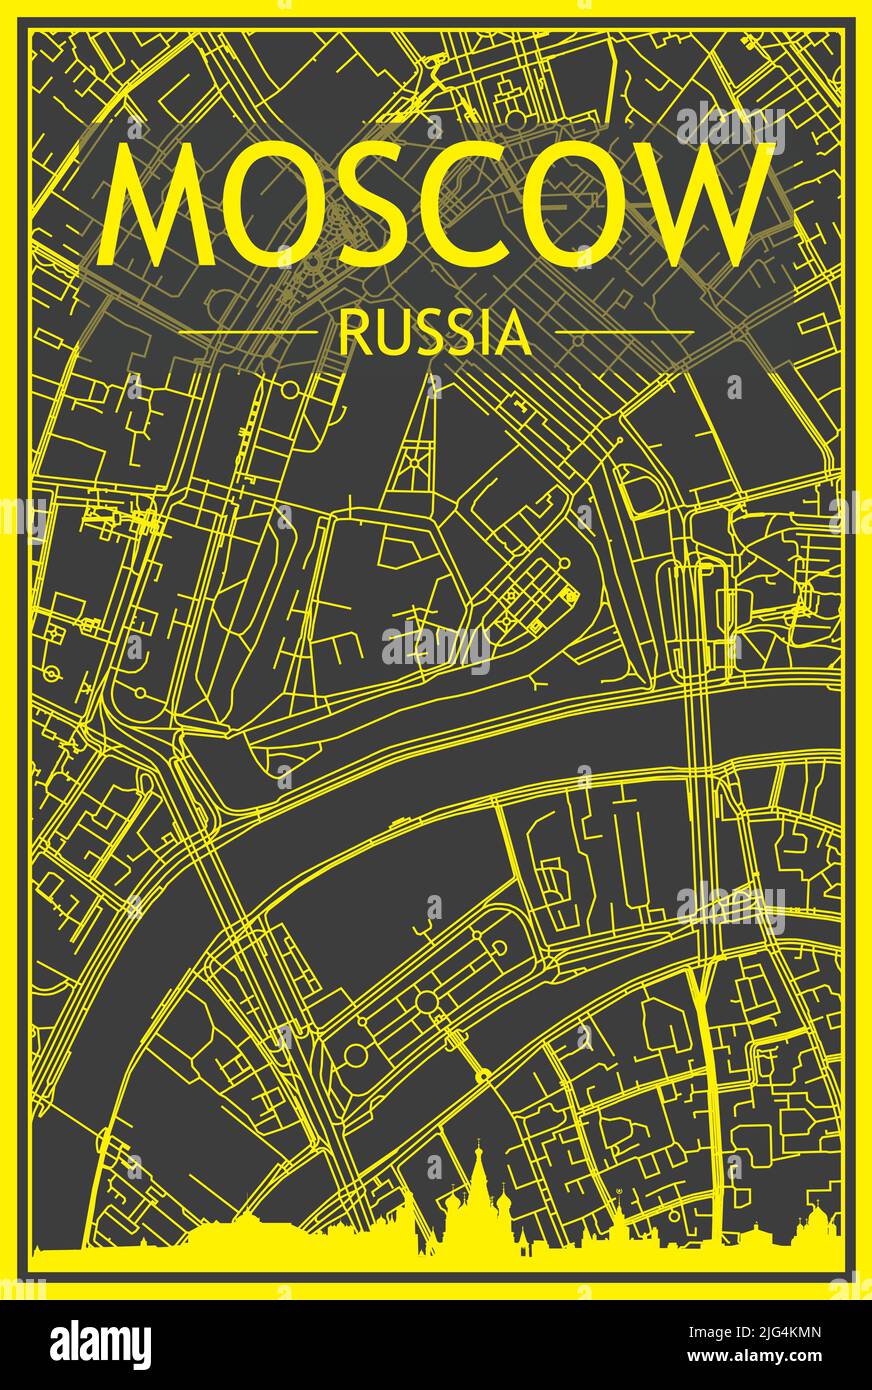 Gelber Ausdruck Stadtplakat mit Panorama-Skyline und handgezeichneten Straßen Netzwerk auf dunkelgrauem Hintergrund der Innenstadt VON MOSKAU, RUSSLAND Stock Vektor